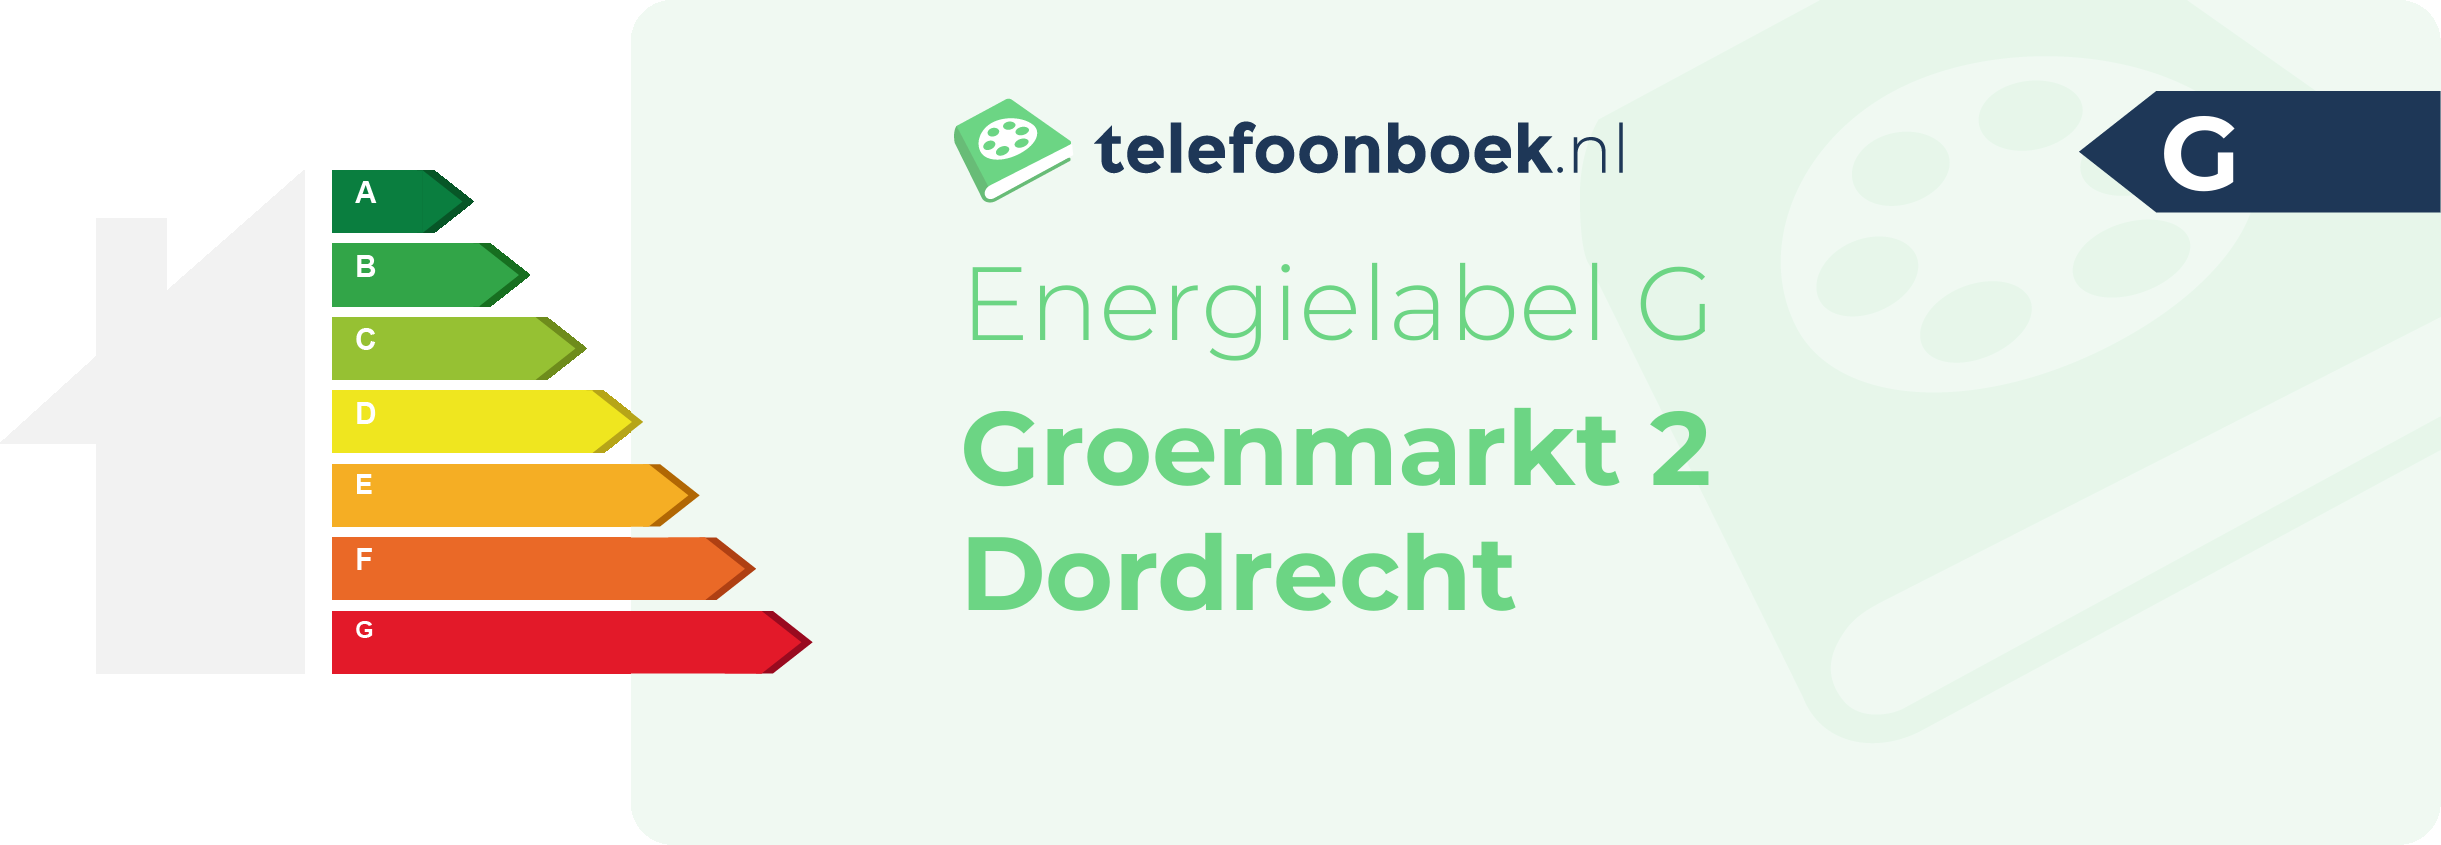 Energielabel Groenmarkt 2 Dordrecht